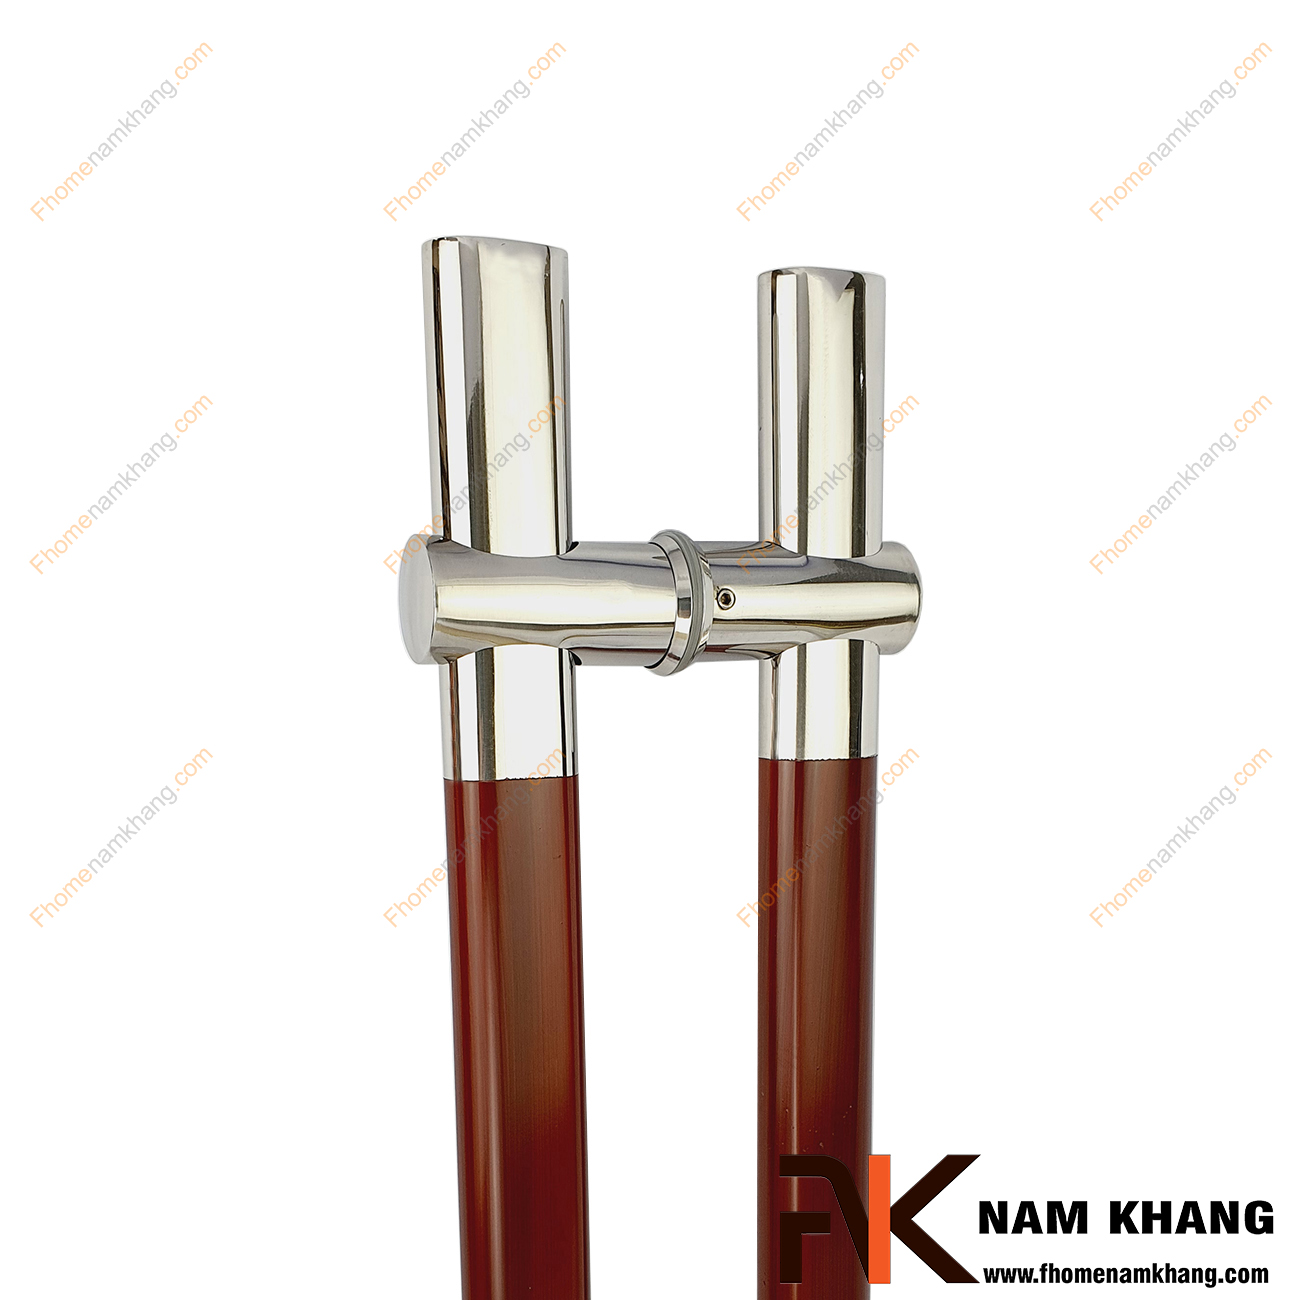 Tay nắm cửa dịch tâm màu inox phối gỗ đỏ NKC008-GD là dòng tay nắm khá độc đáo cho các dạng cửa với nhiều chất liệu khác nhau. Điểm đặc biệt của dòng tay nắm này là phần đế của tay nắm có thể nới lỏng để dịch chuyển tùy theo nhu cầu của người sử dụng.